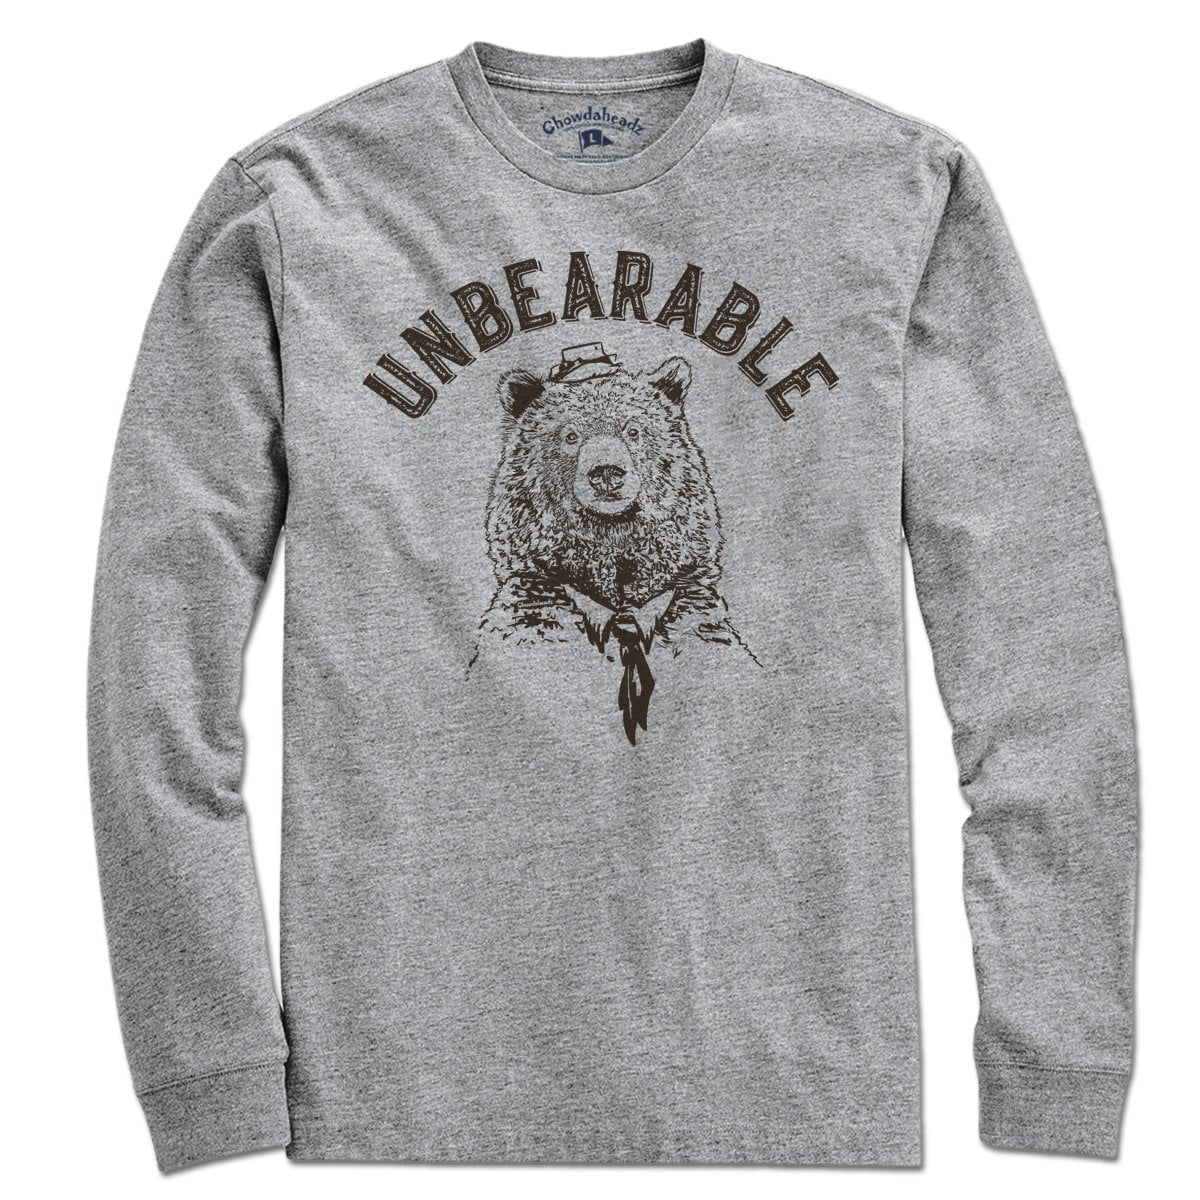 Unbearable T-Shirt - Chowdaheadz